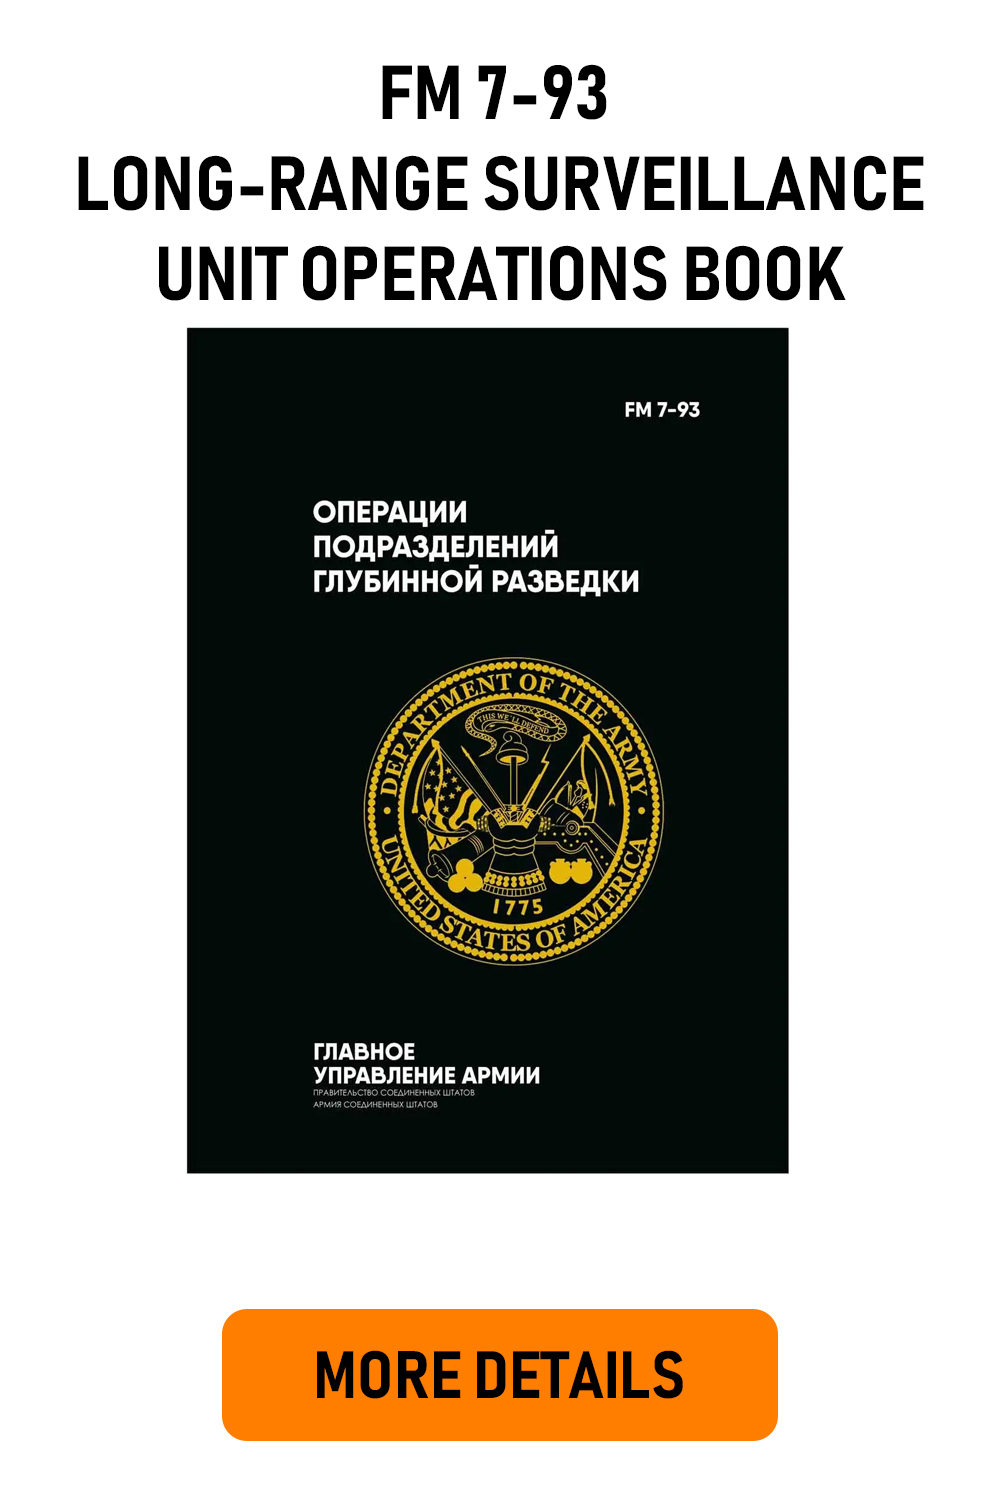 FM 7-93 Long-Range Surveillance Unit Operations Book